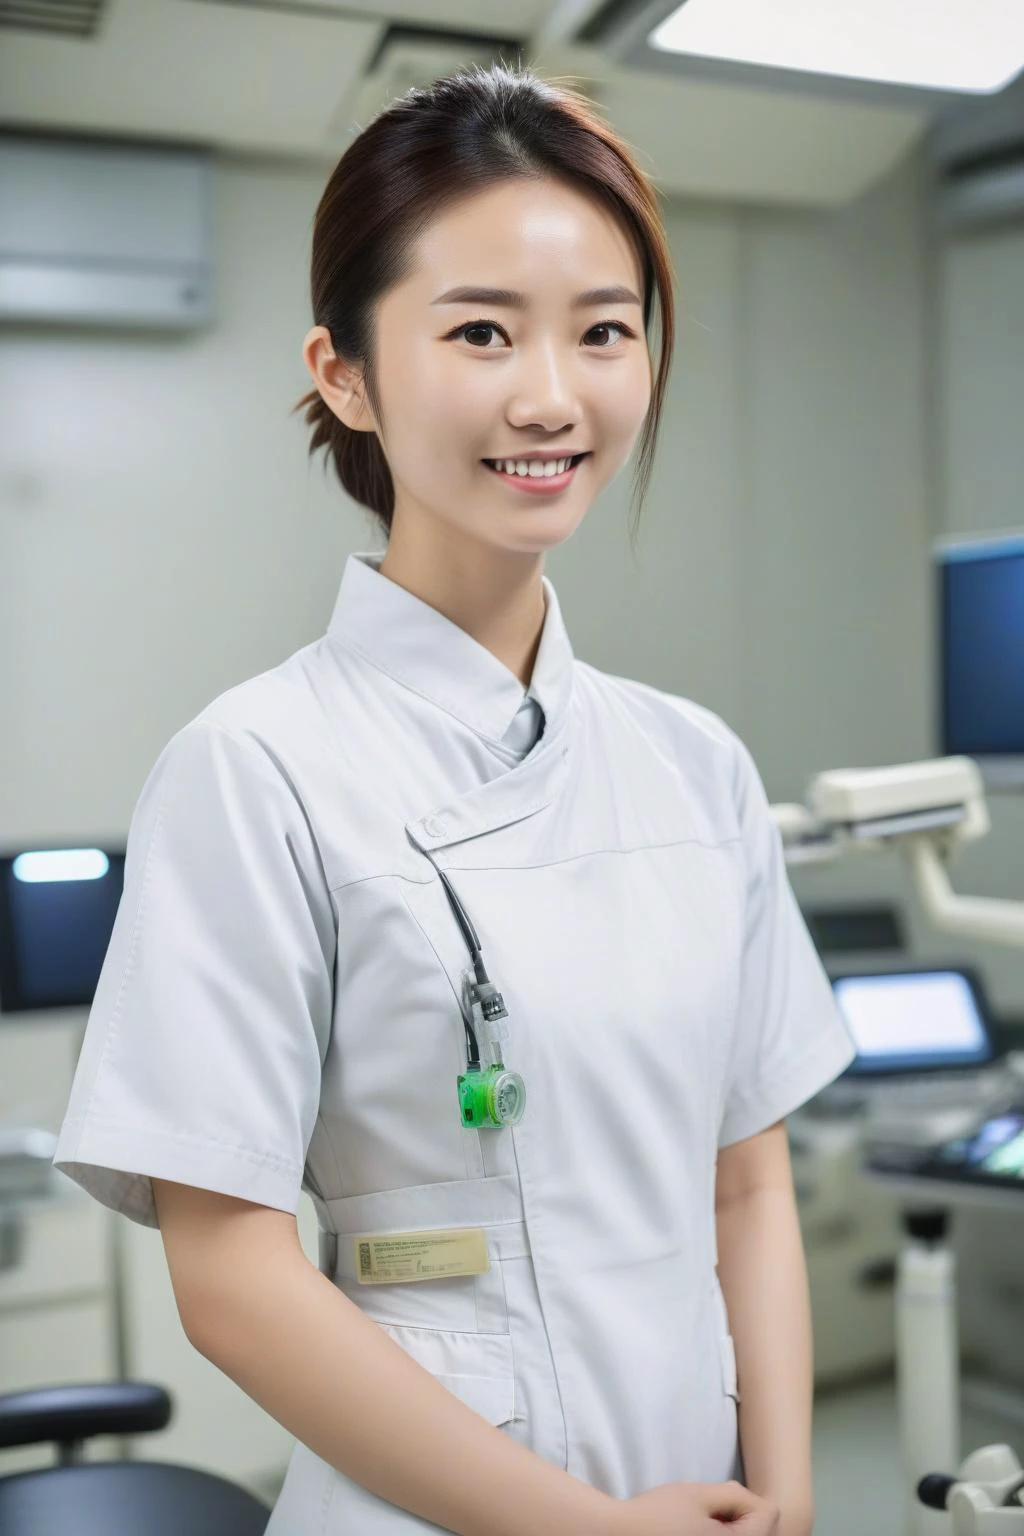 Dentro de uma moderna sala de cirurgia, uma jovem enfermeira taiwanesa usa uniforme branco de enfermeira. sorriso gentil, dslr, focado, corpo todo, perfil lateral,
 